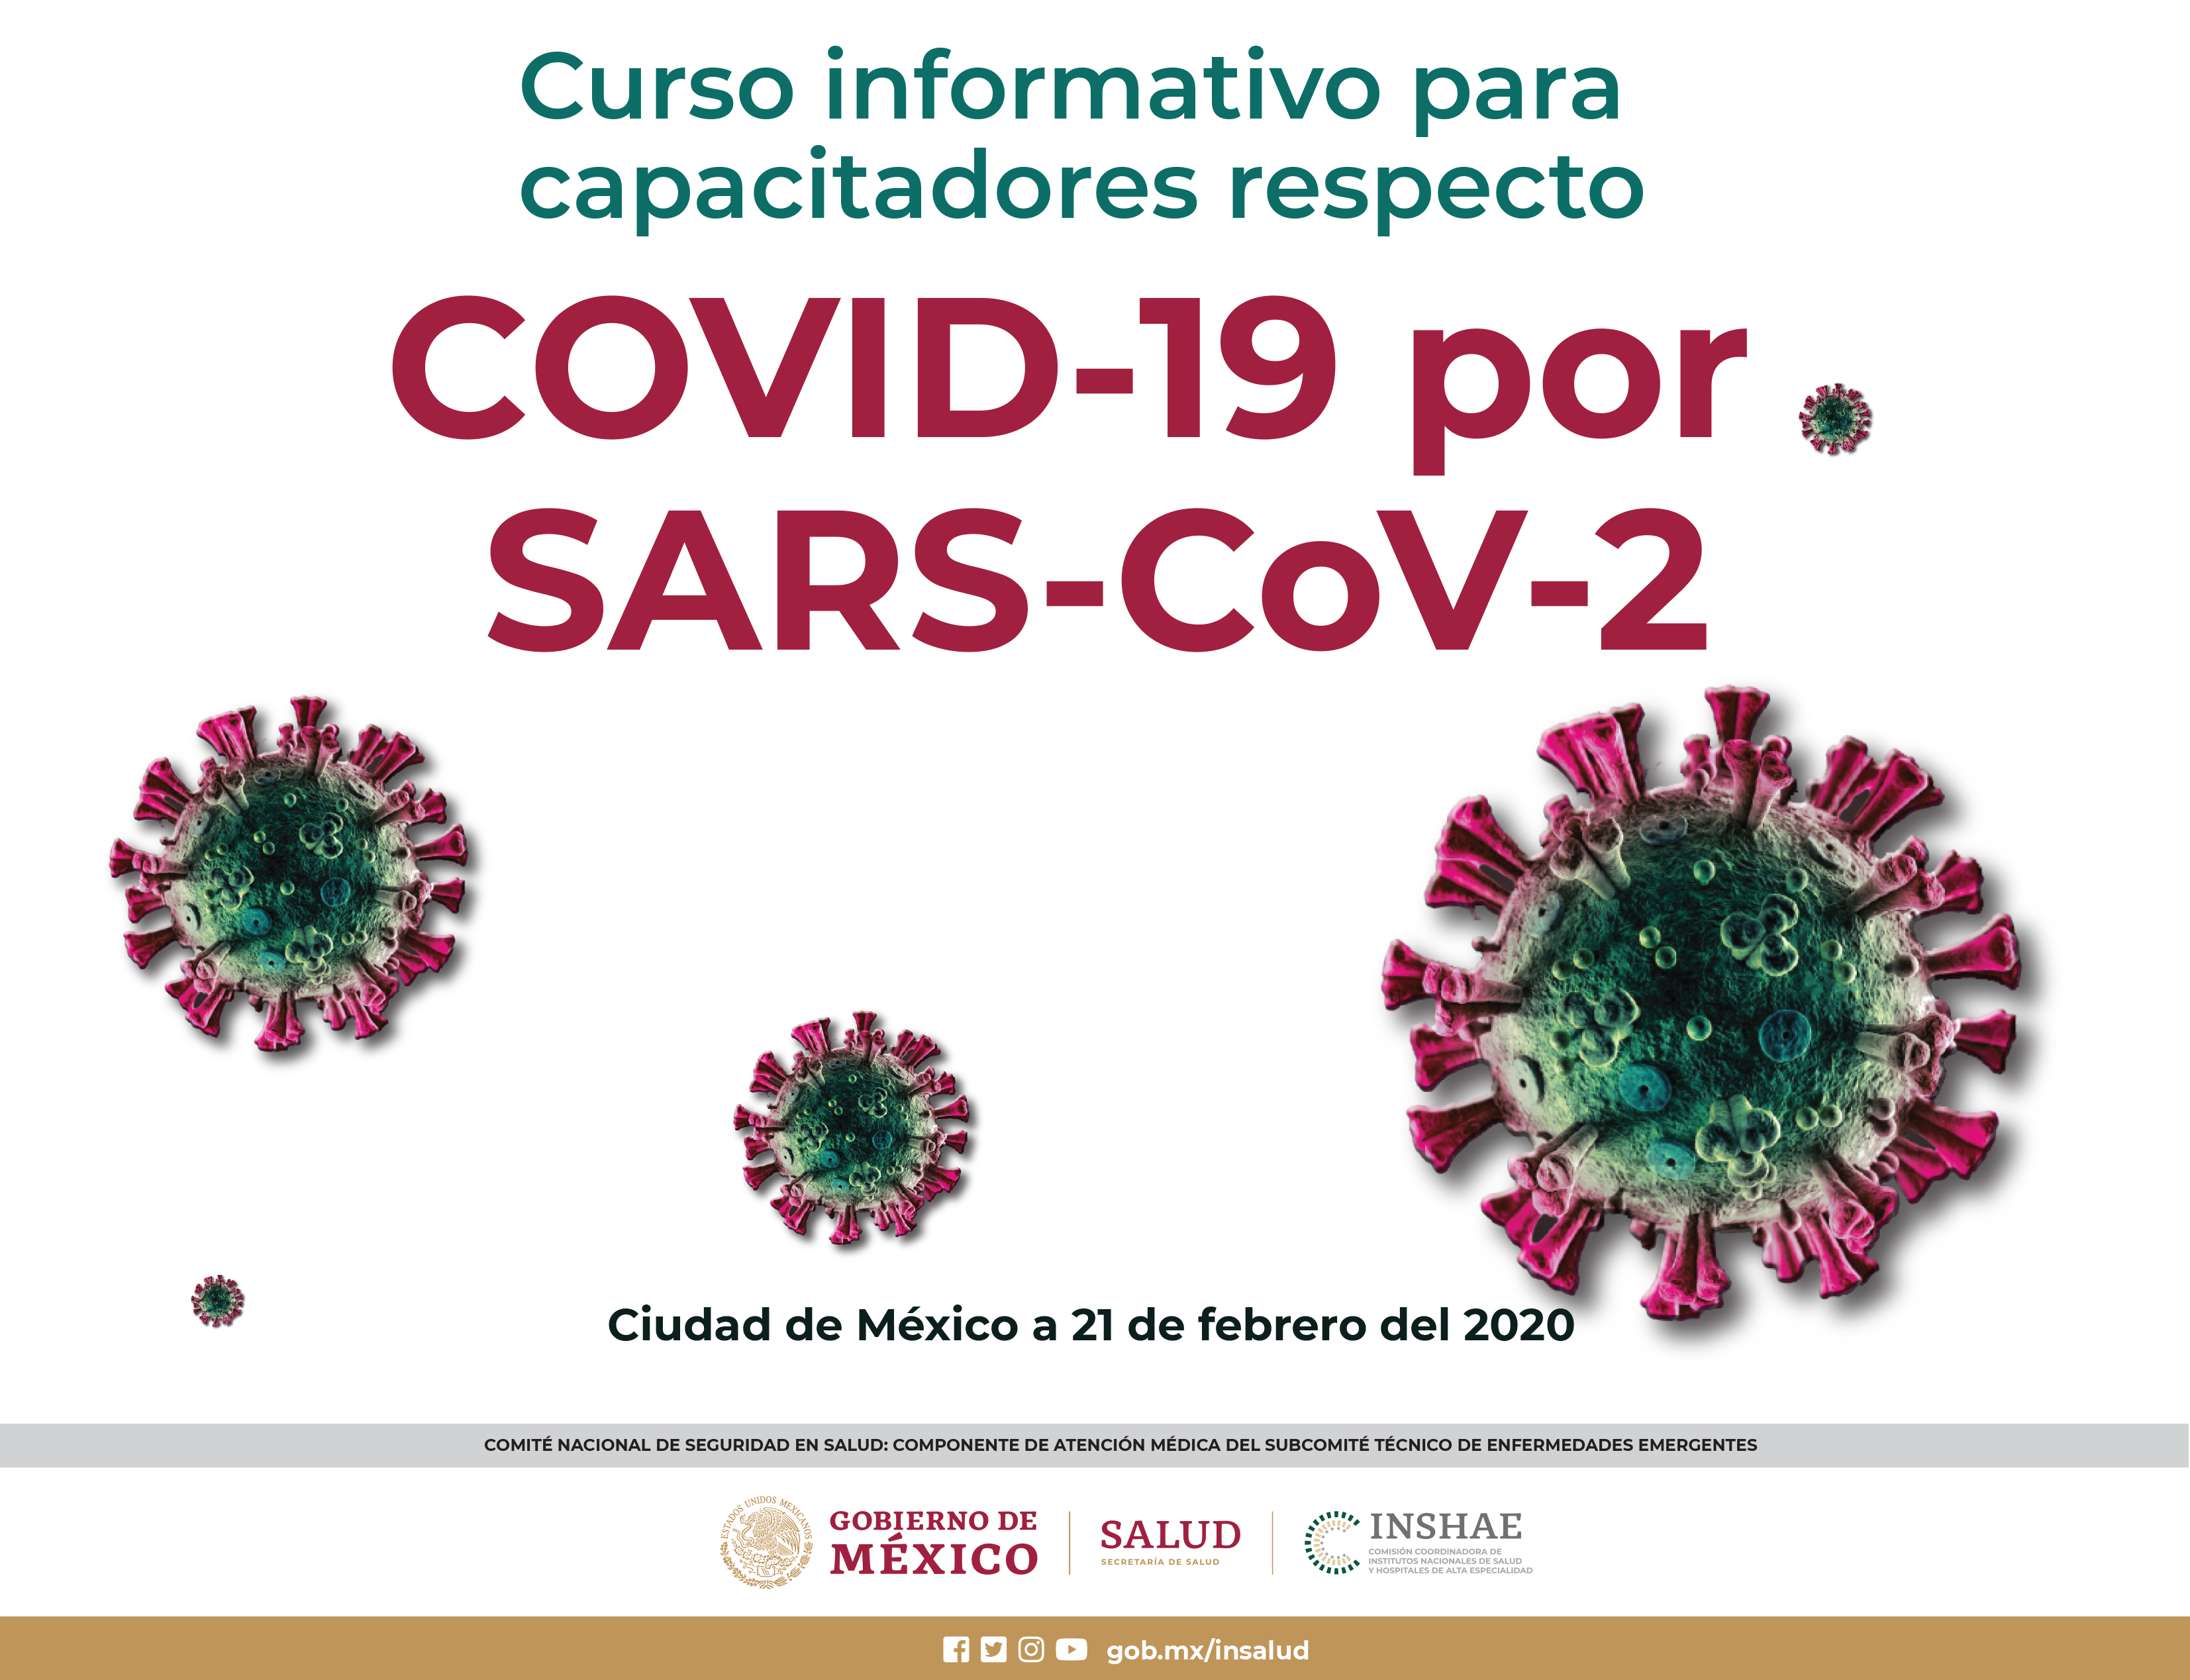 Curso informativo para capacitadores con respecto a COVID19 por SARS-Cov-2